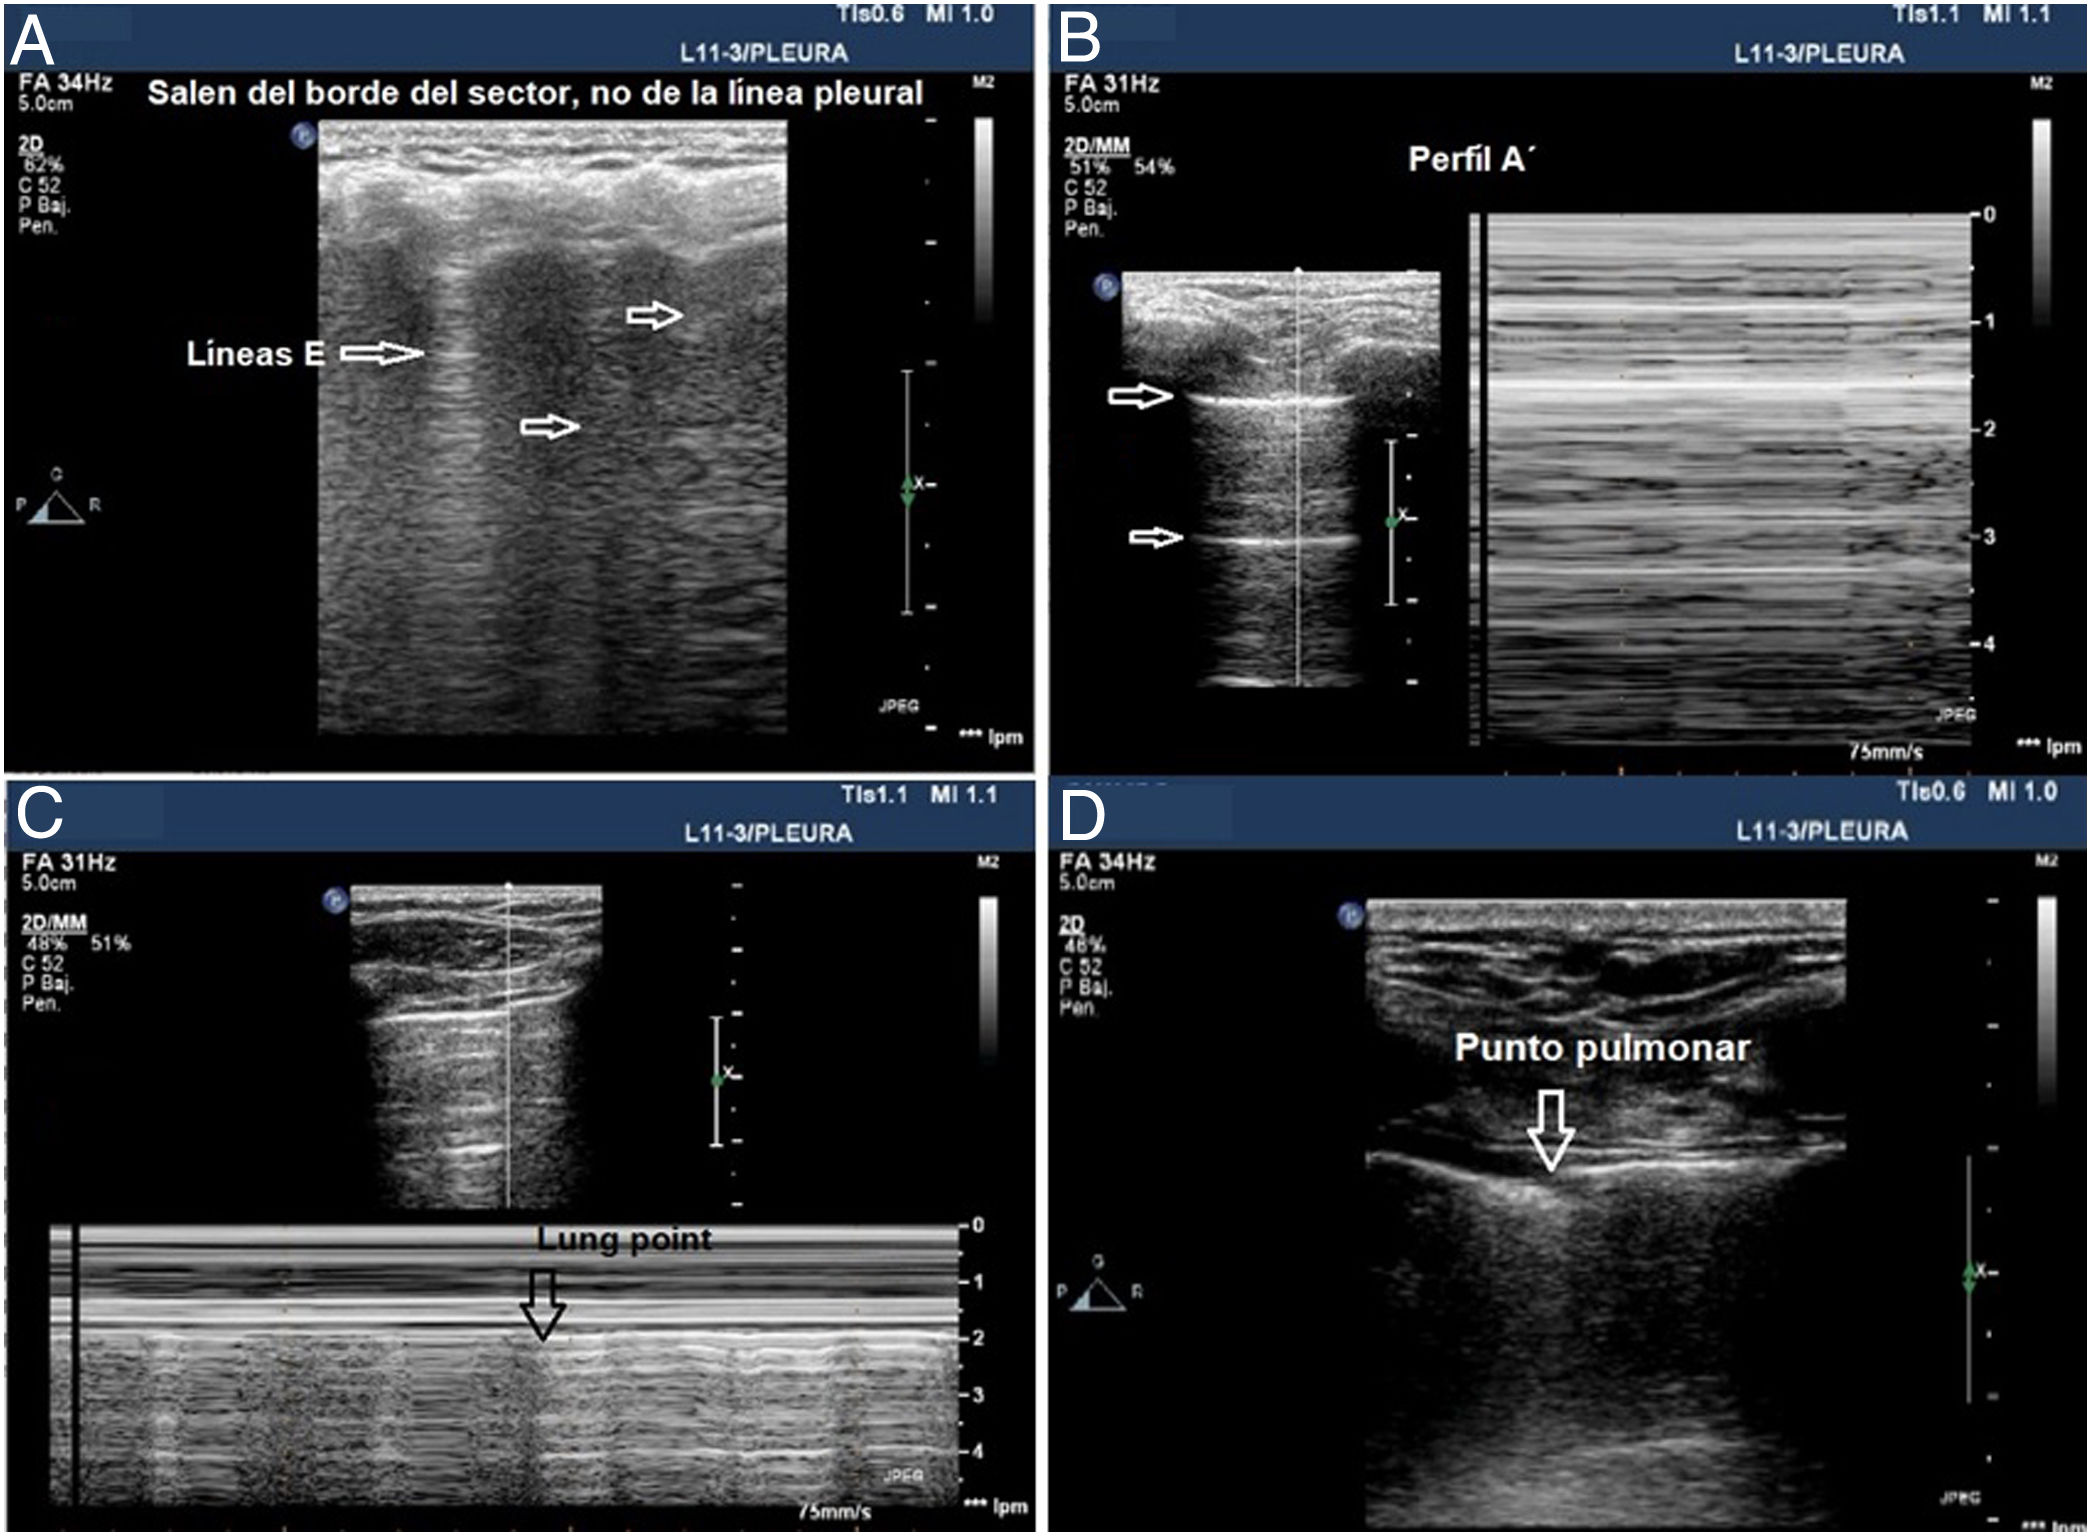 Protocolo de manejo hospitalario de alteraciones electrocardiográficas en  pacientes con COVID-19 con un sistema portátil vinculado a smartphone